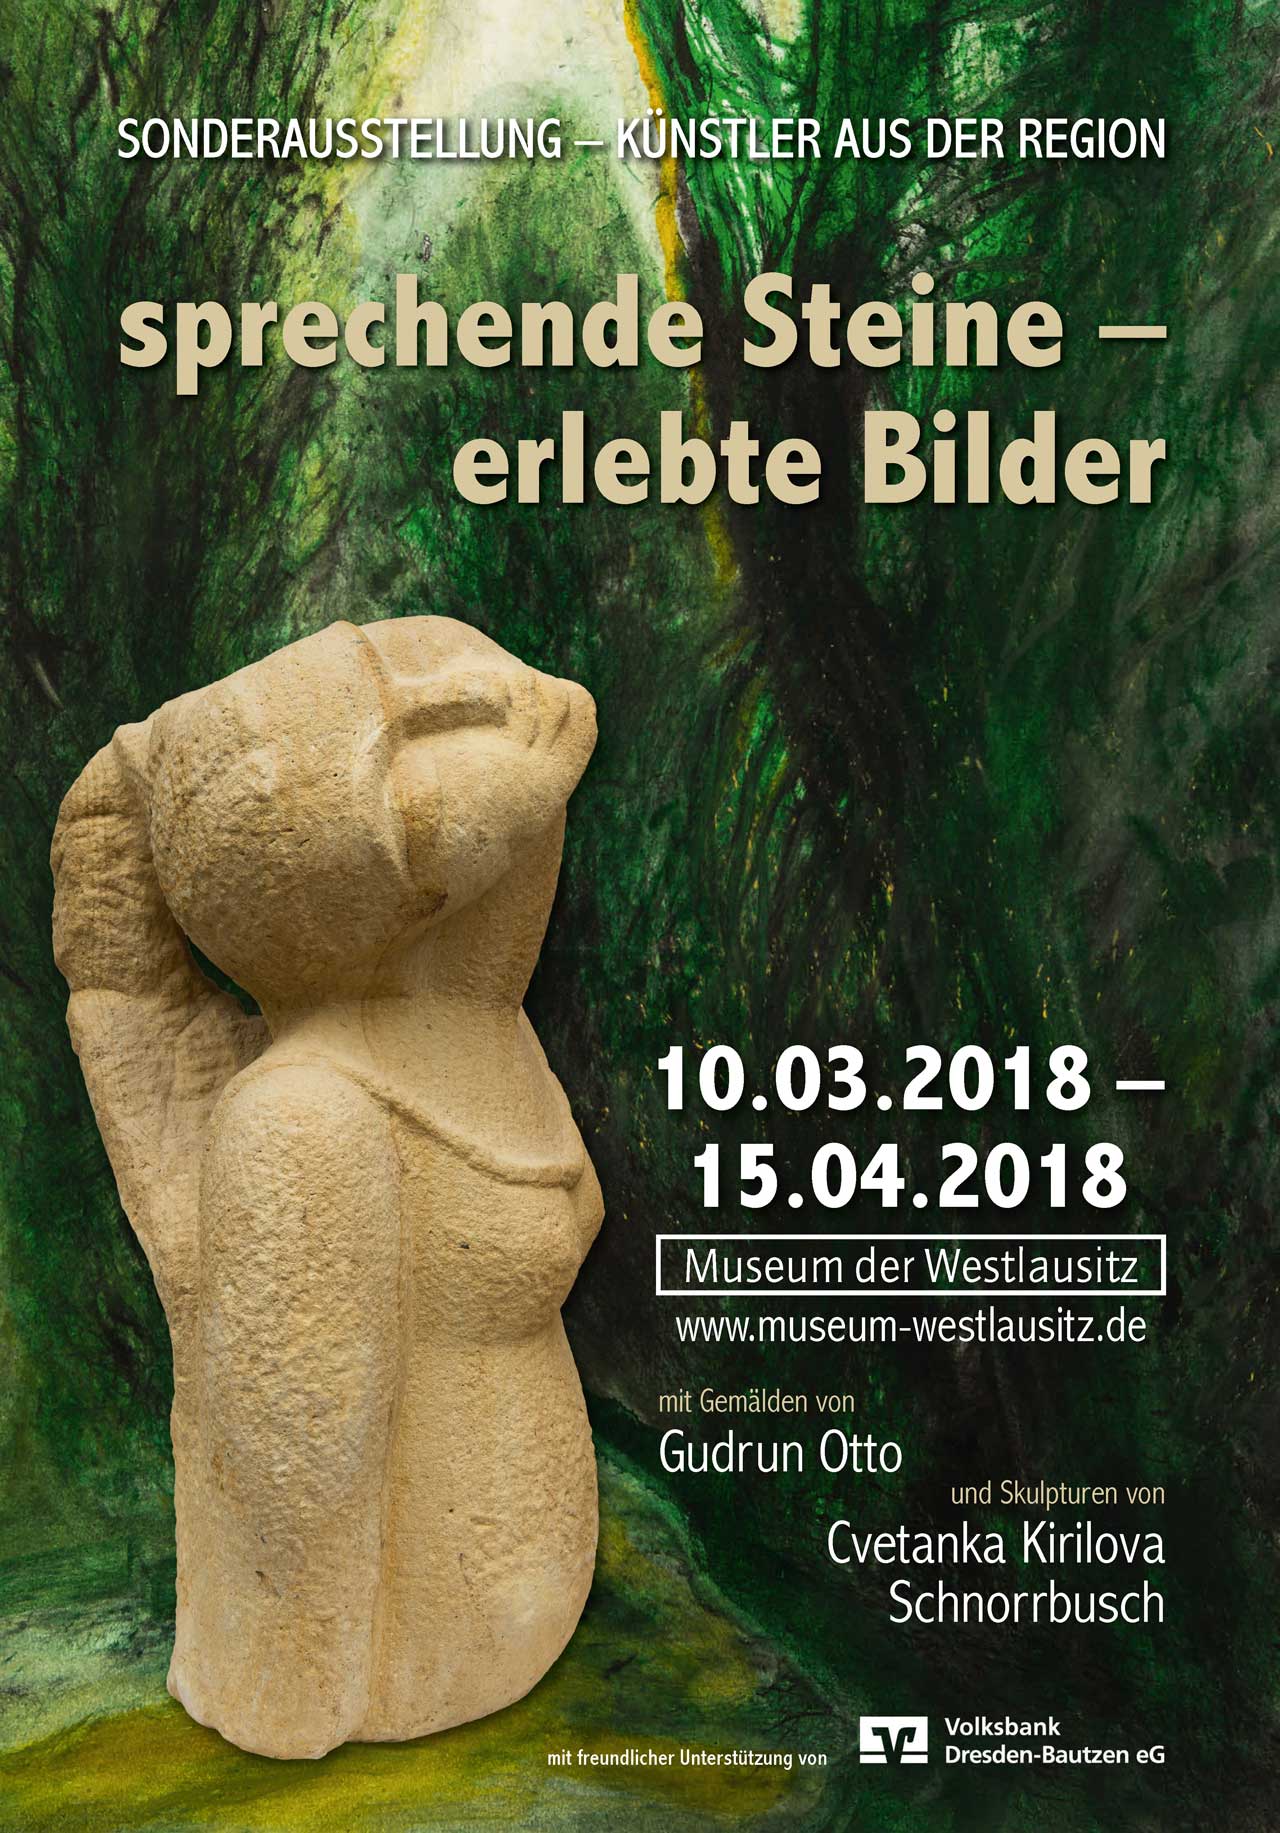 sprechende Steine - erlebte Bilder  - Sonderausstellung im Museum der Westlausitz Kamenz